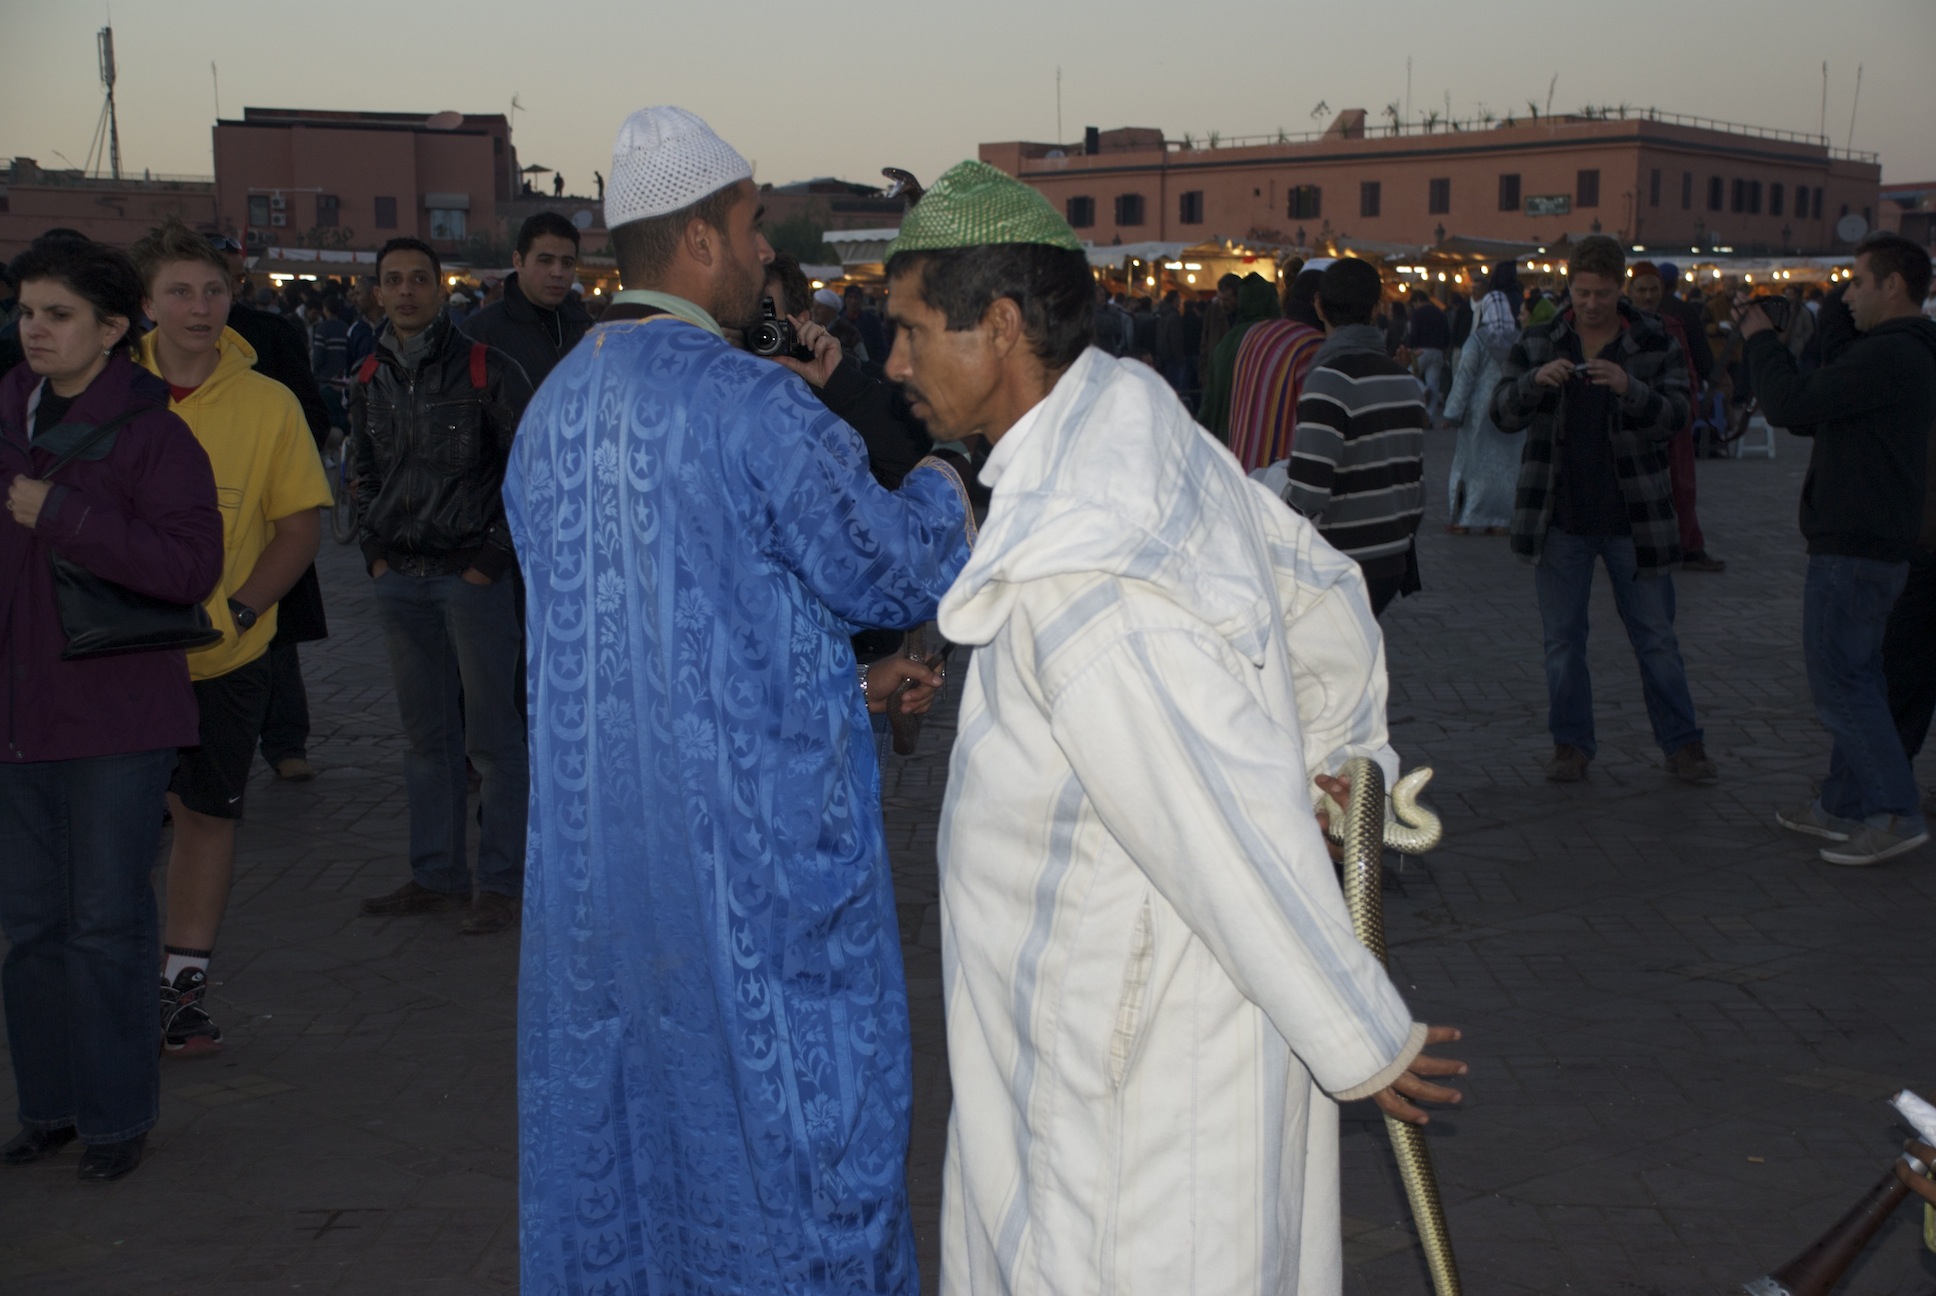 Marrakech mon amour